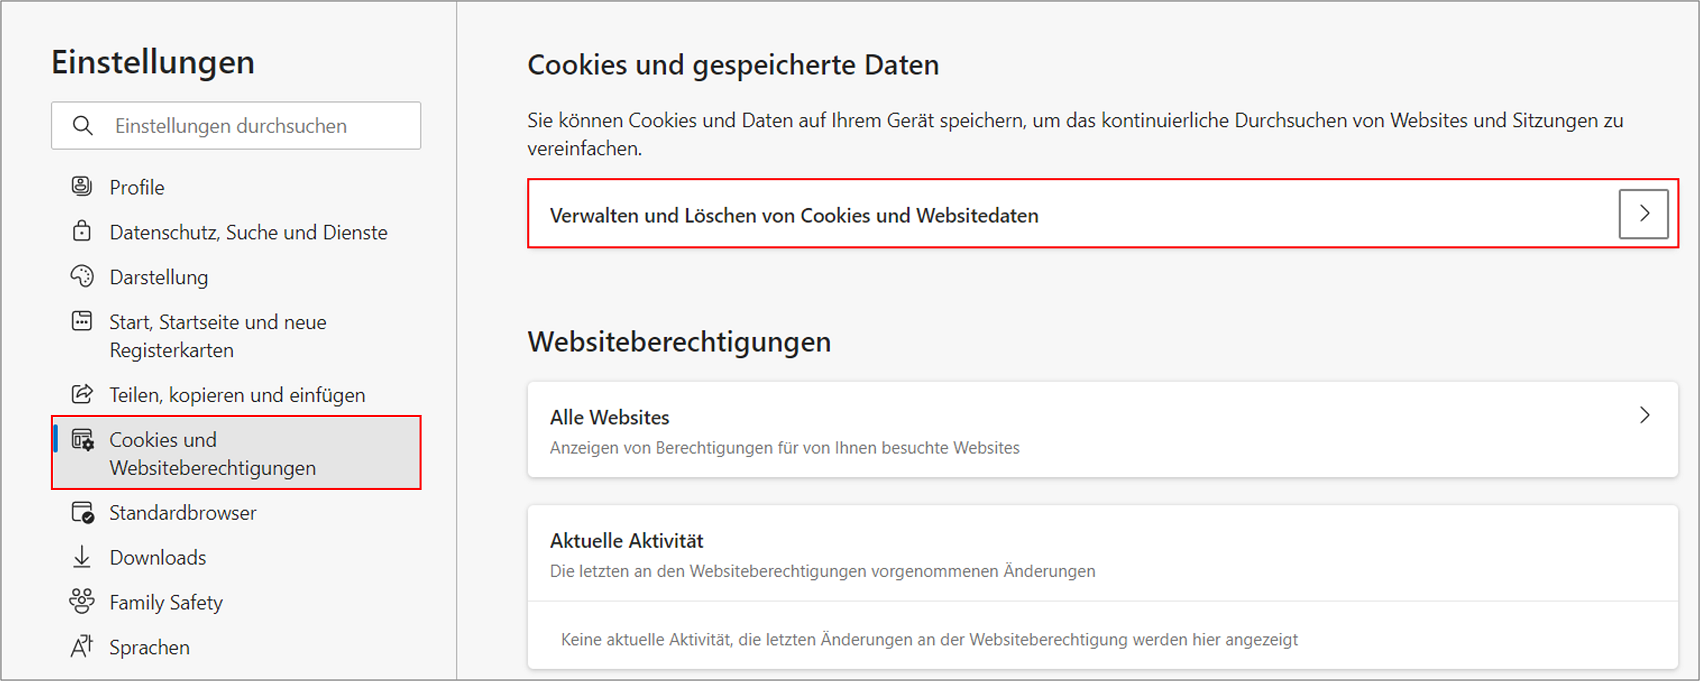 Über den Menüpunkt "Cookies und Websiteberechtigungen" können Sie in Microsoft Edge Cookie-Einstellungen vornehmen und Cookies löschen.